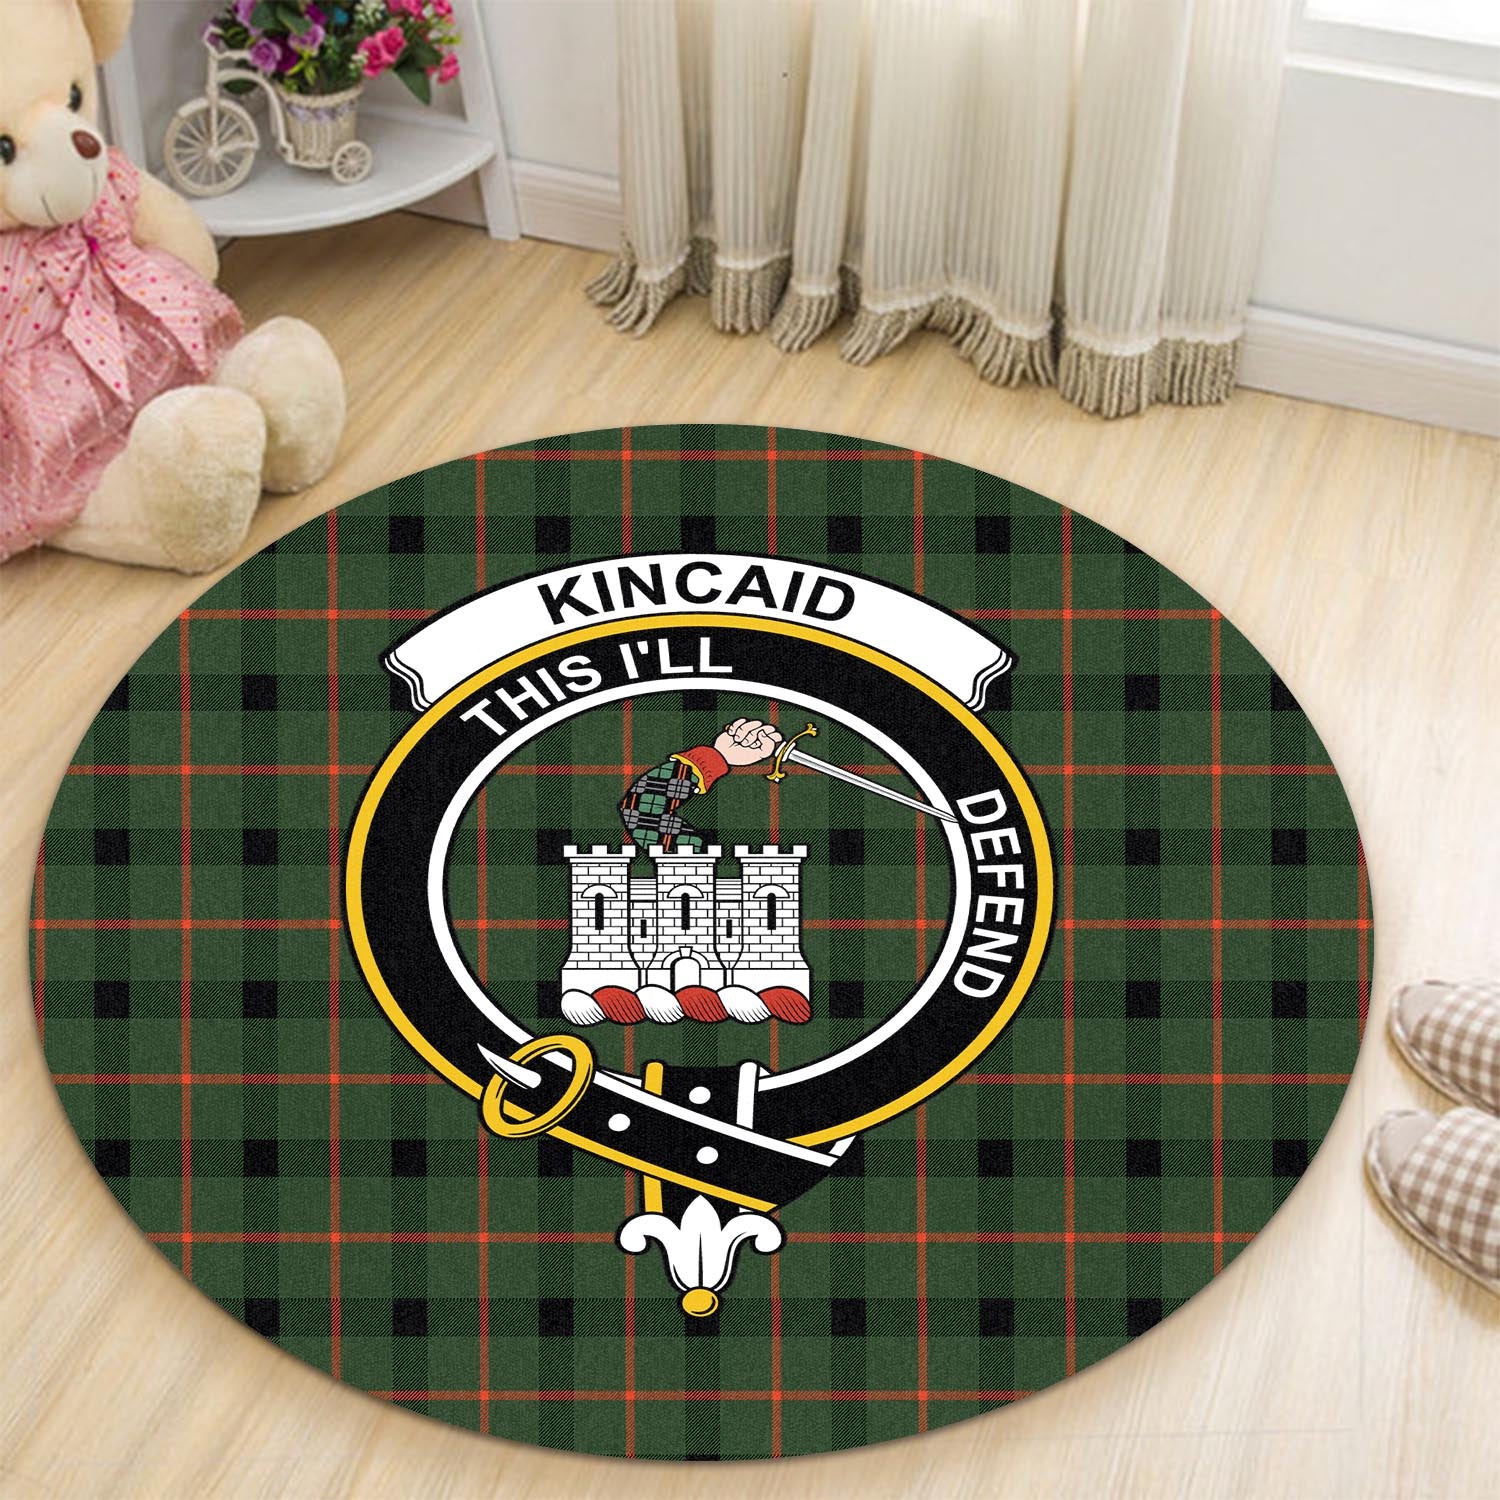 kincaid-modern-tartan-round-rug-with-family-crest